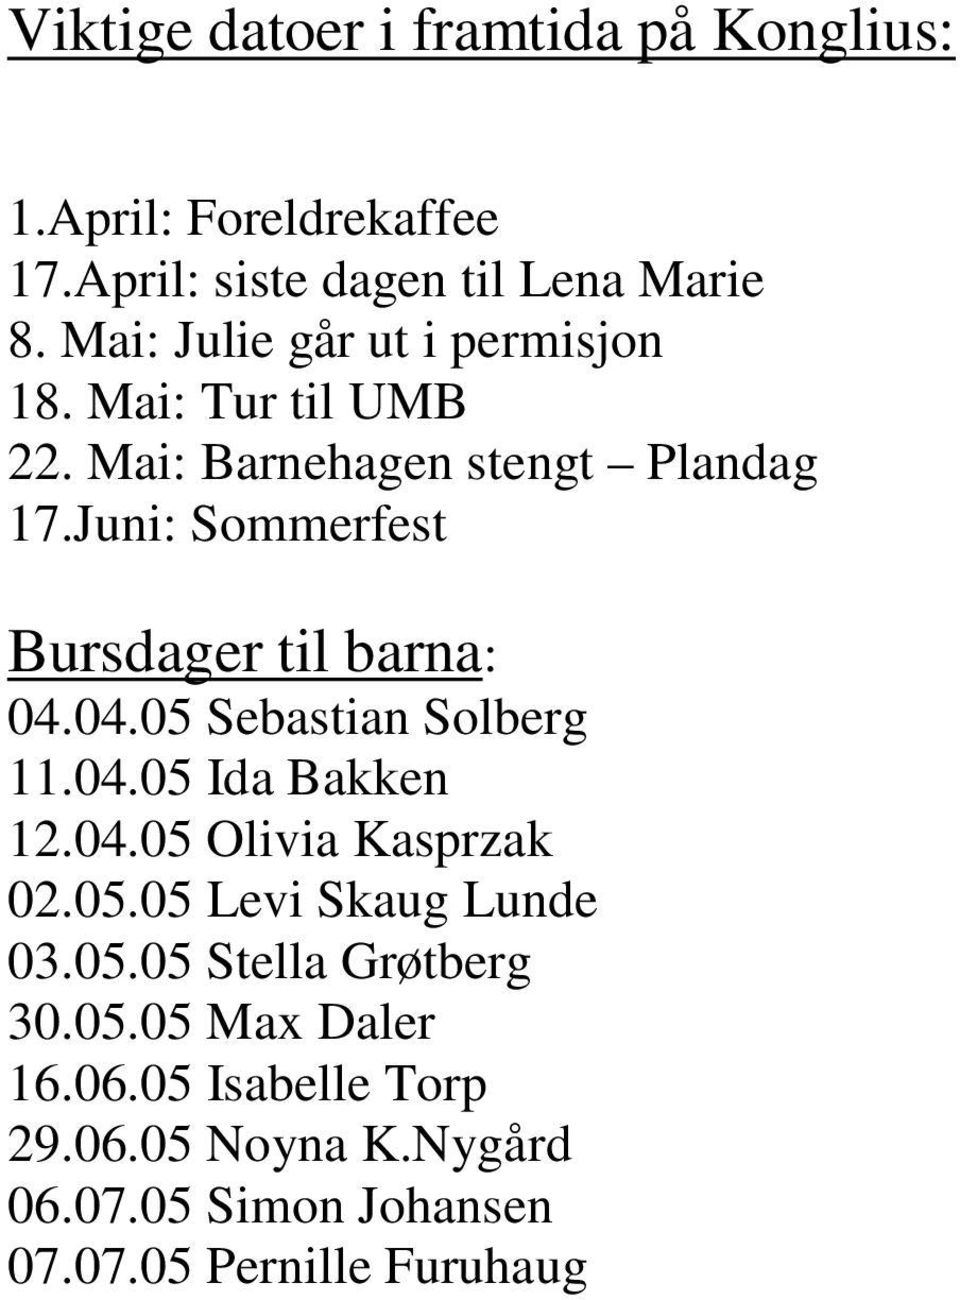 Juni: Sommerfest Bursdager til barna: 04.04.05 Sebastian Solberg 11.04.05 Ida Bakken 12.04.05 Olivia Kasprzak 02.05.05 Levi Skaug Lunde 03.